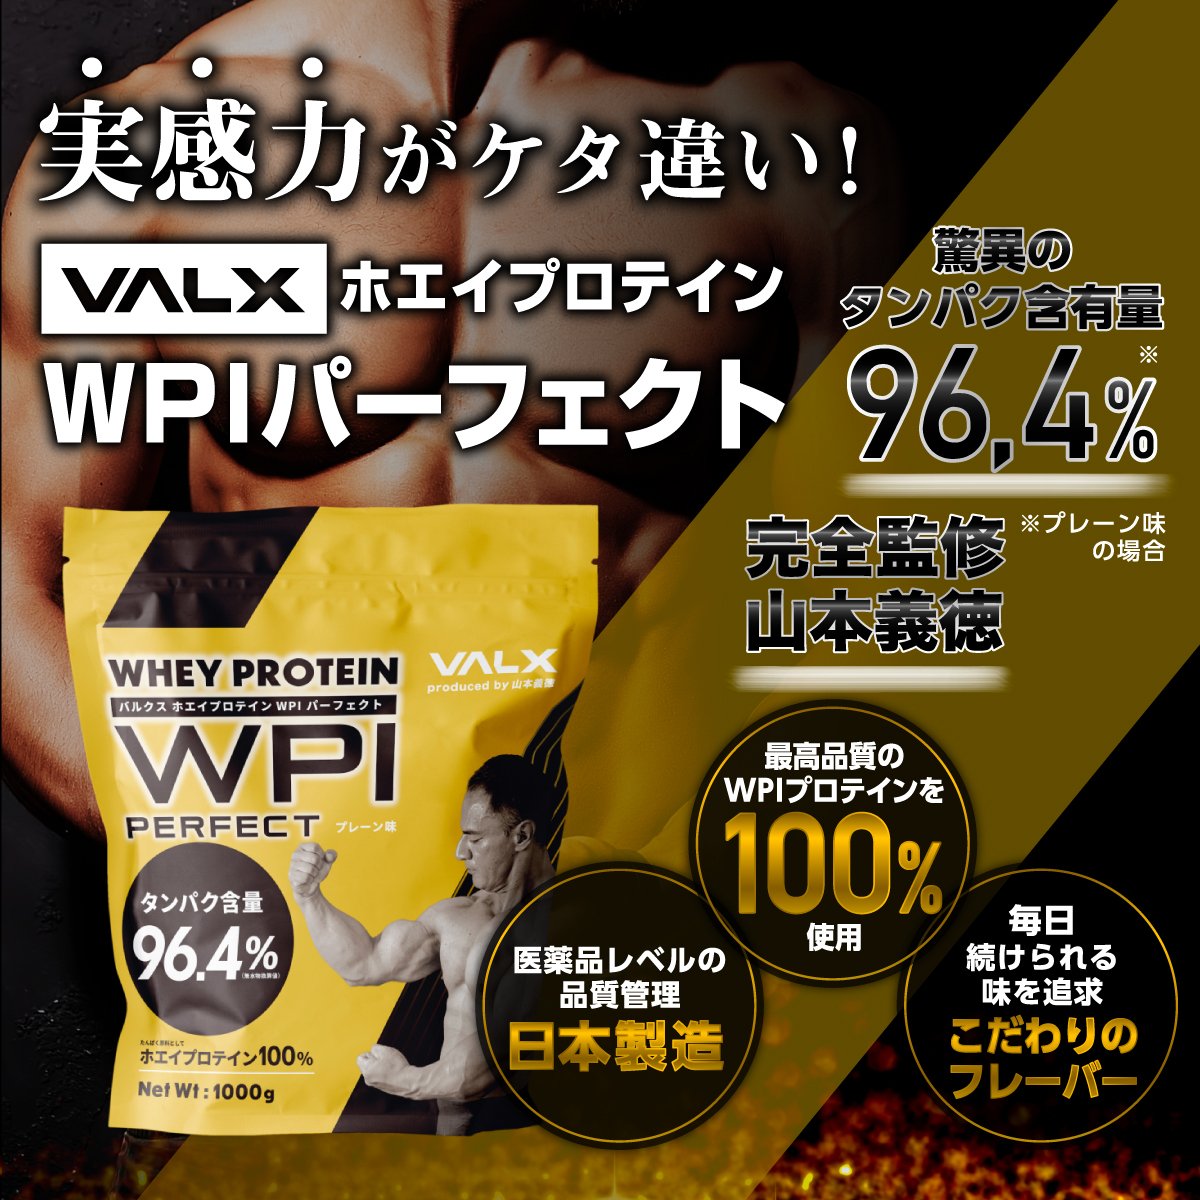 プロテイン 山本義徳 バルクス WPI VALX ホエイ プロテイン 1kg 3kg